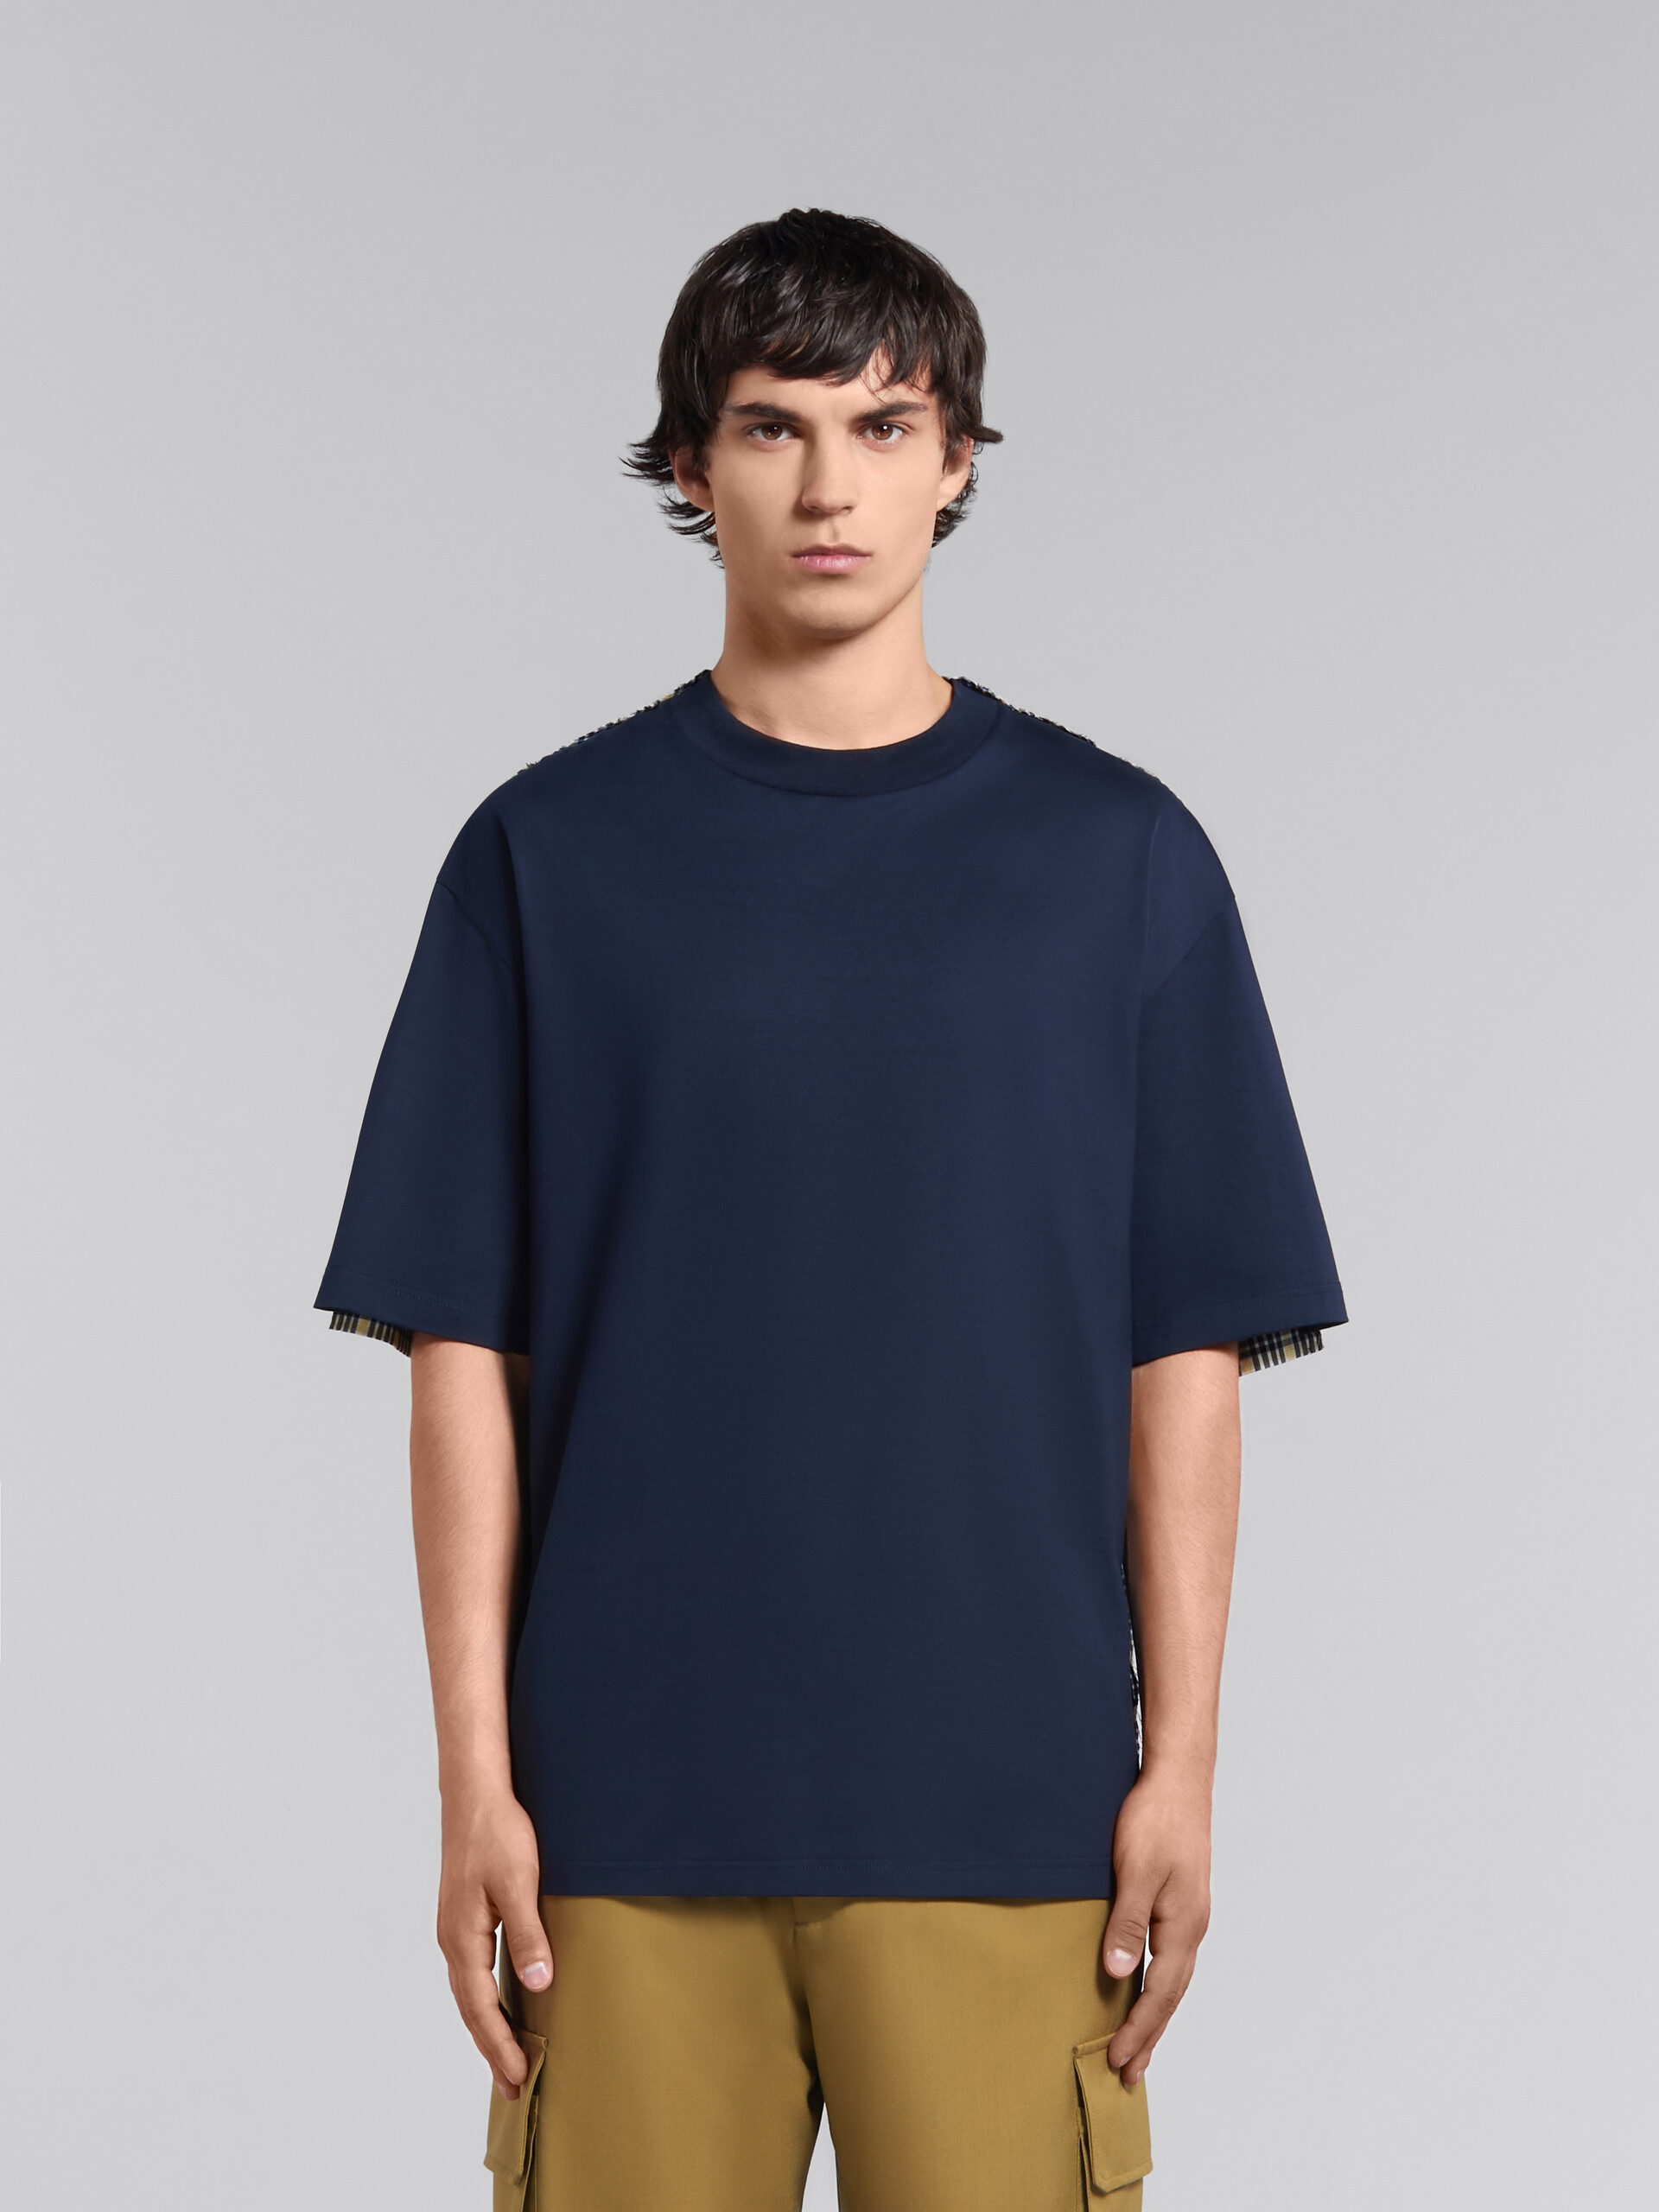 ディープブルー オーガニックコットン製Tシャツ、チェックバック - Tシャツ - Image 2